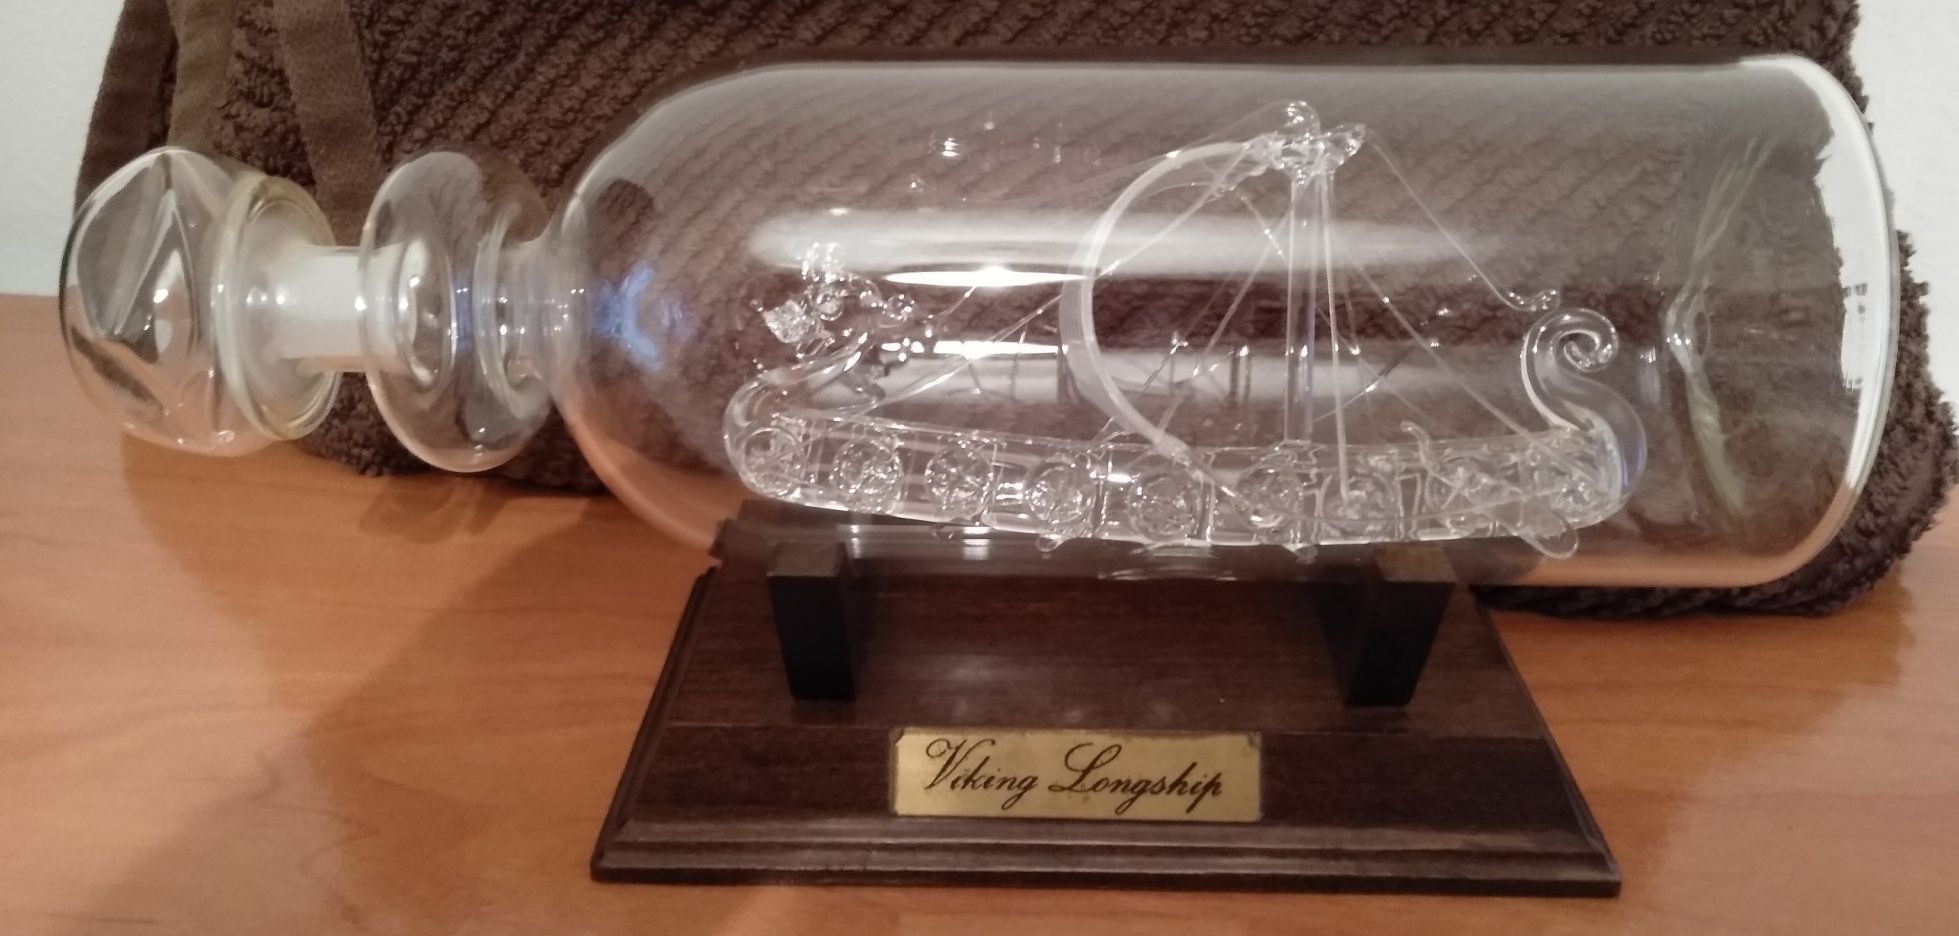 Garrafa de vidro com o Barco dos Viking no interior